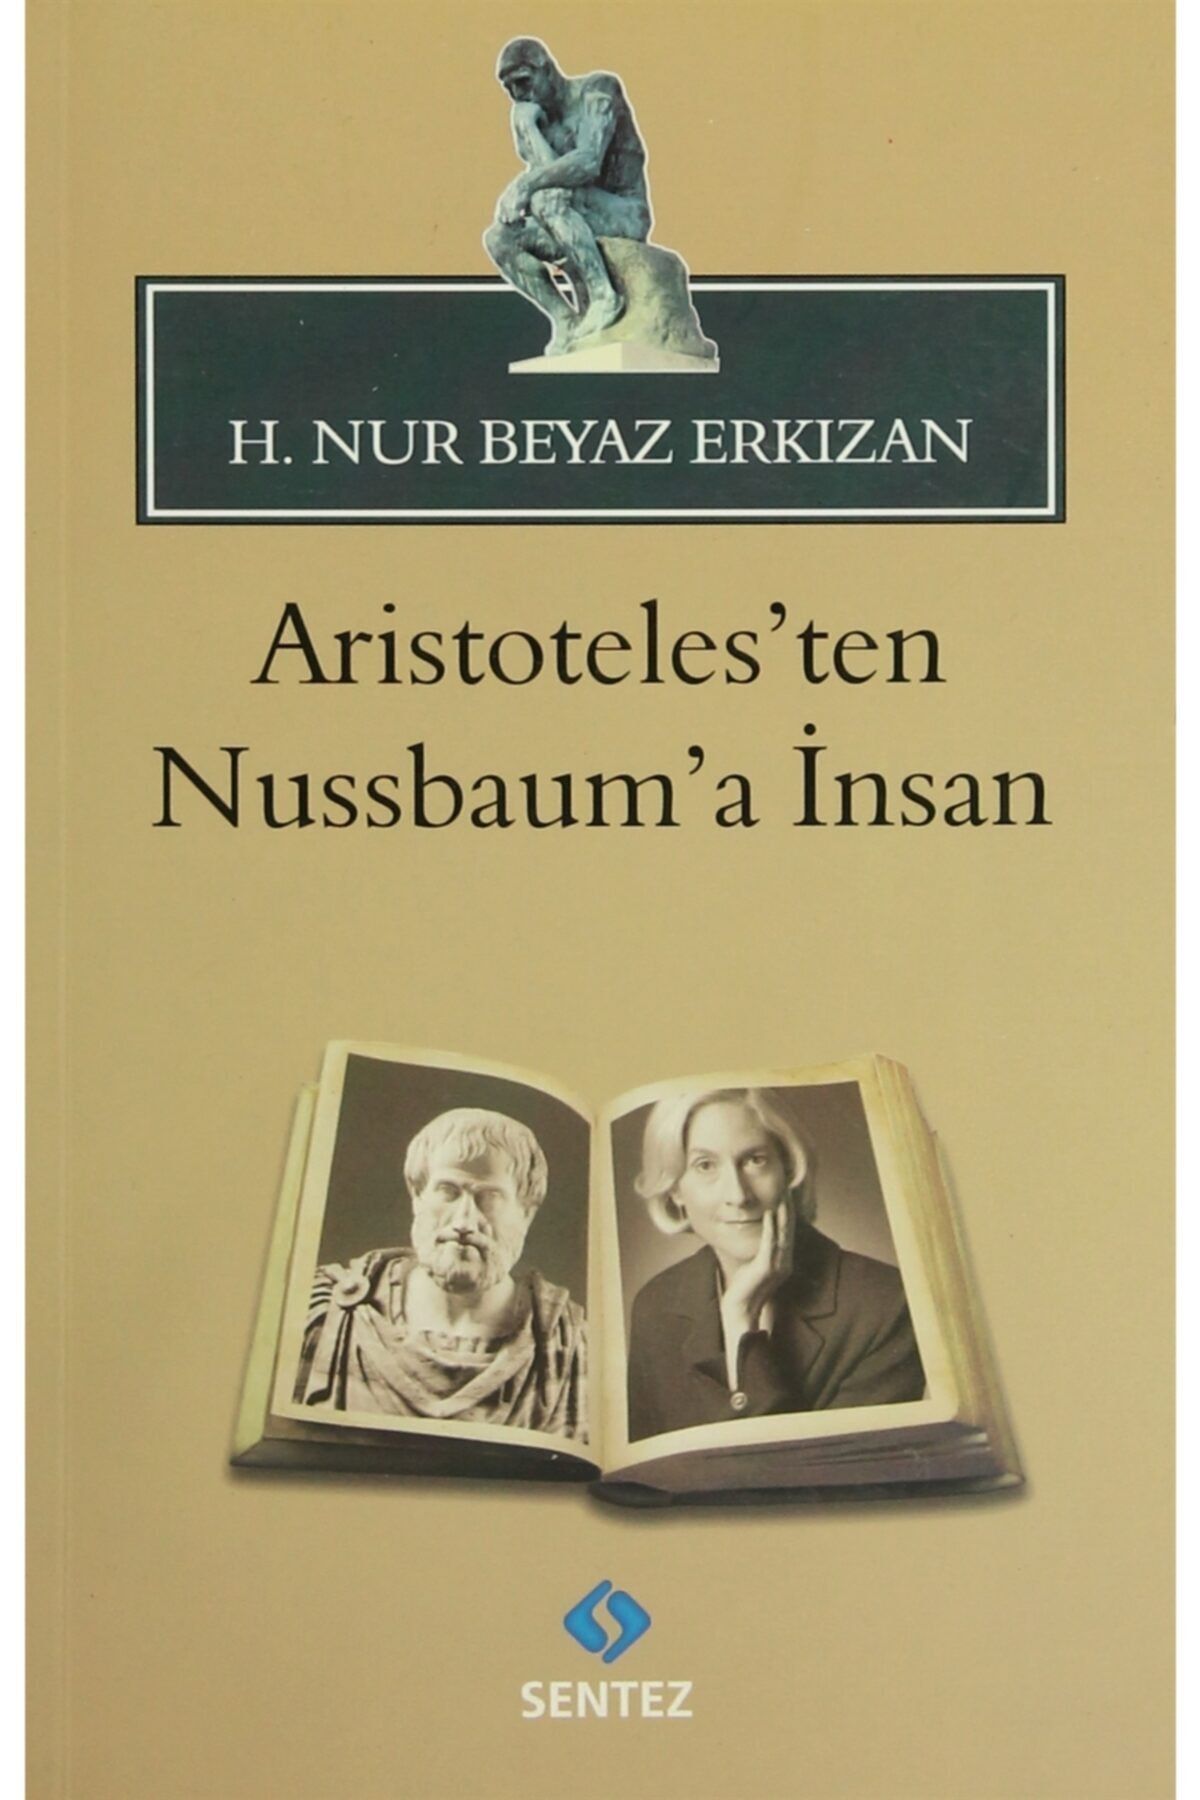 Sentez Yayınları Aristoteles’ten Nussbaum’a Insan - H. Nur Beyaz Erkızan 9786055790301